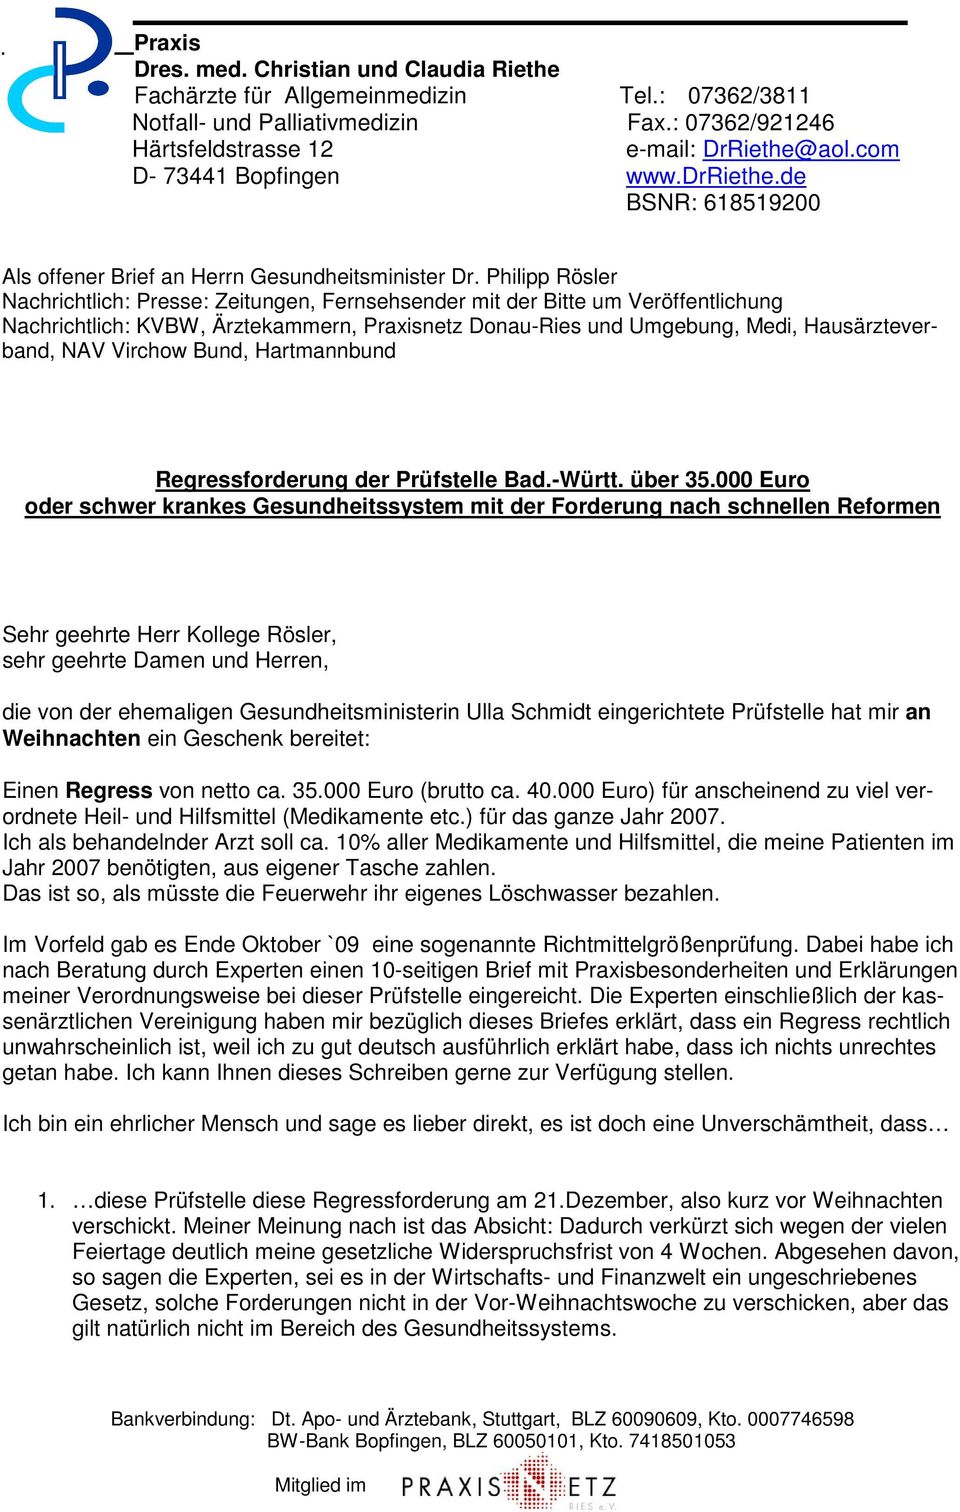 Virchow Bund, Hartmannbund Regressforderung der Prüfstelle Bad.-Württ. über 35.